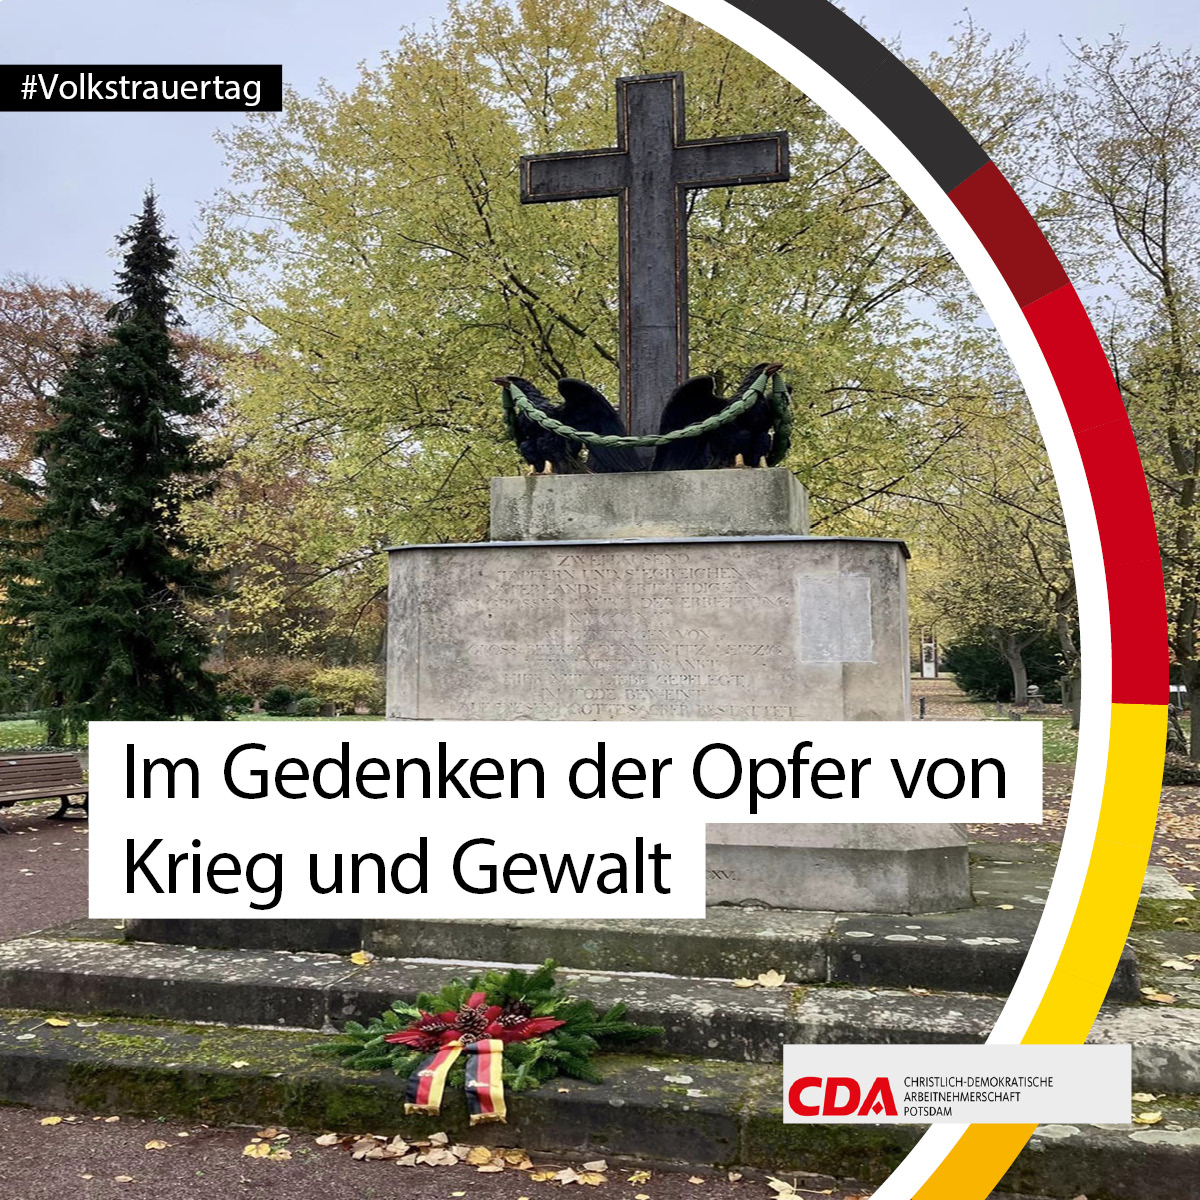 Am heutigen #Volkstrauertag gedachten wir auf dem #Potsdam|er Alten Friedhof allen Opfern von Krieg und Gewalt. In Zeiten von Krieg in Europa, soll der heutige Tag auch für Frieden und Versöhnung stehen.